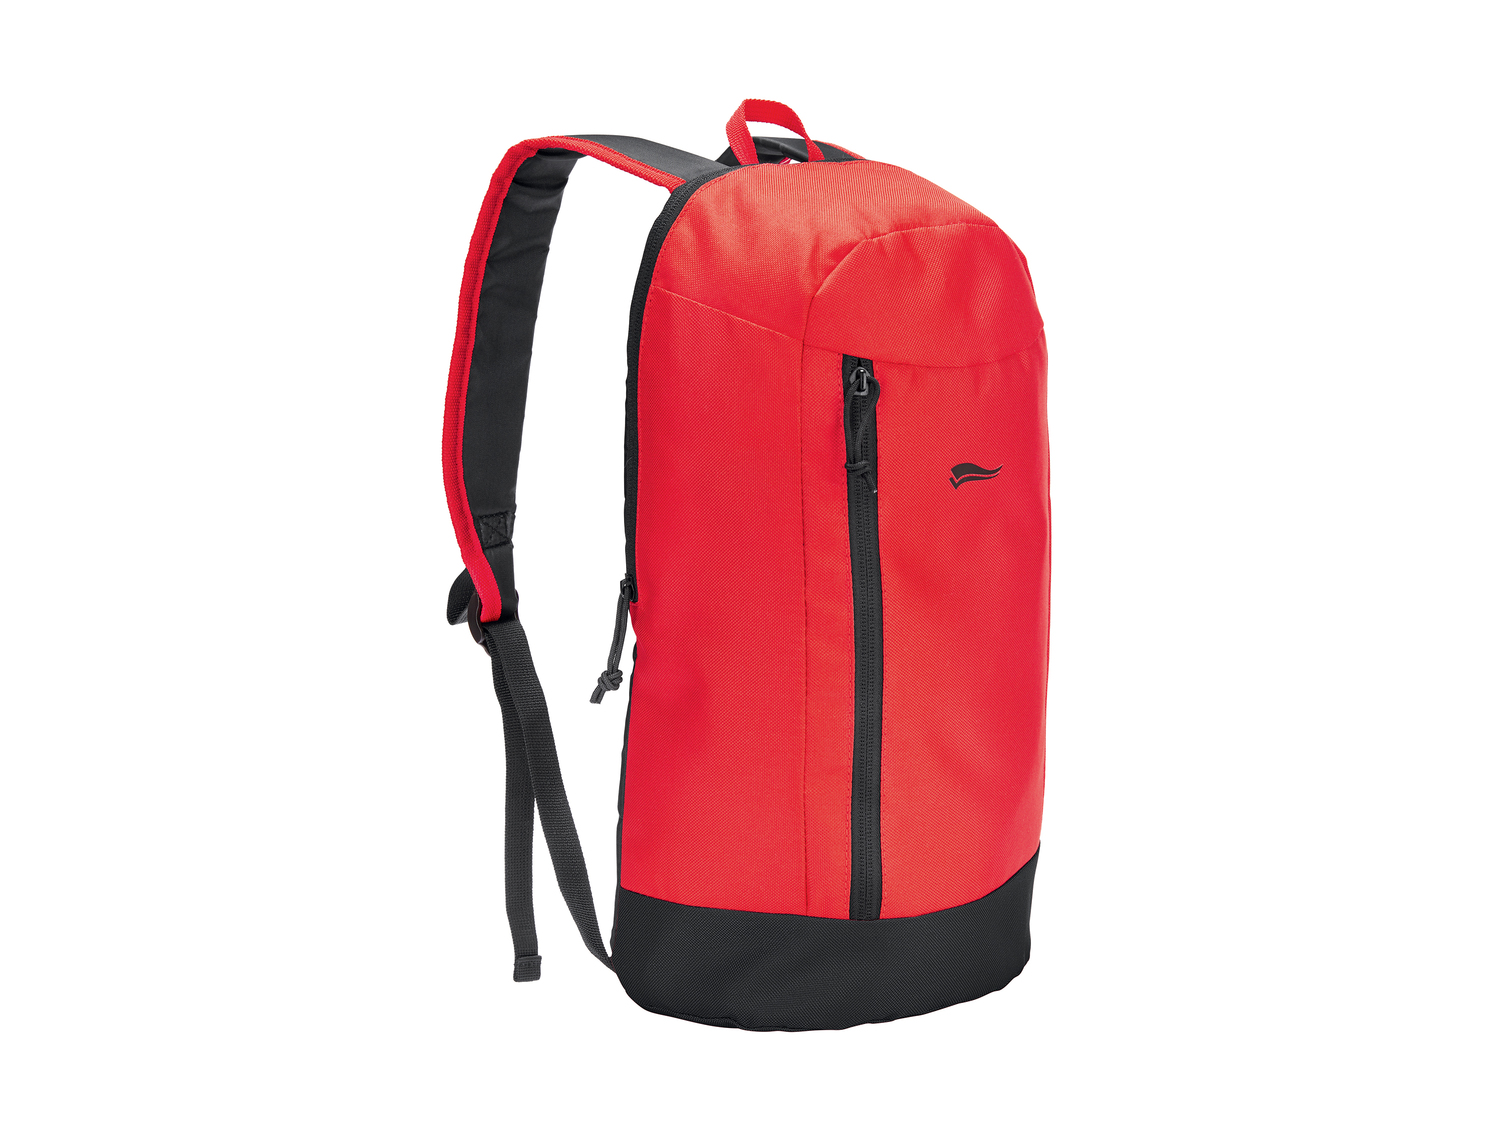 Mini-sac à dos , le prix 1.99 € 
- Env. 10 L
- 4 kg max.
- 5 coloris au choix
Caractéristiques

- ...